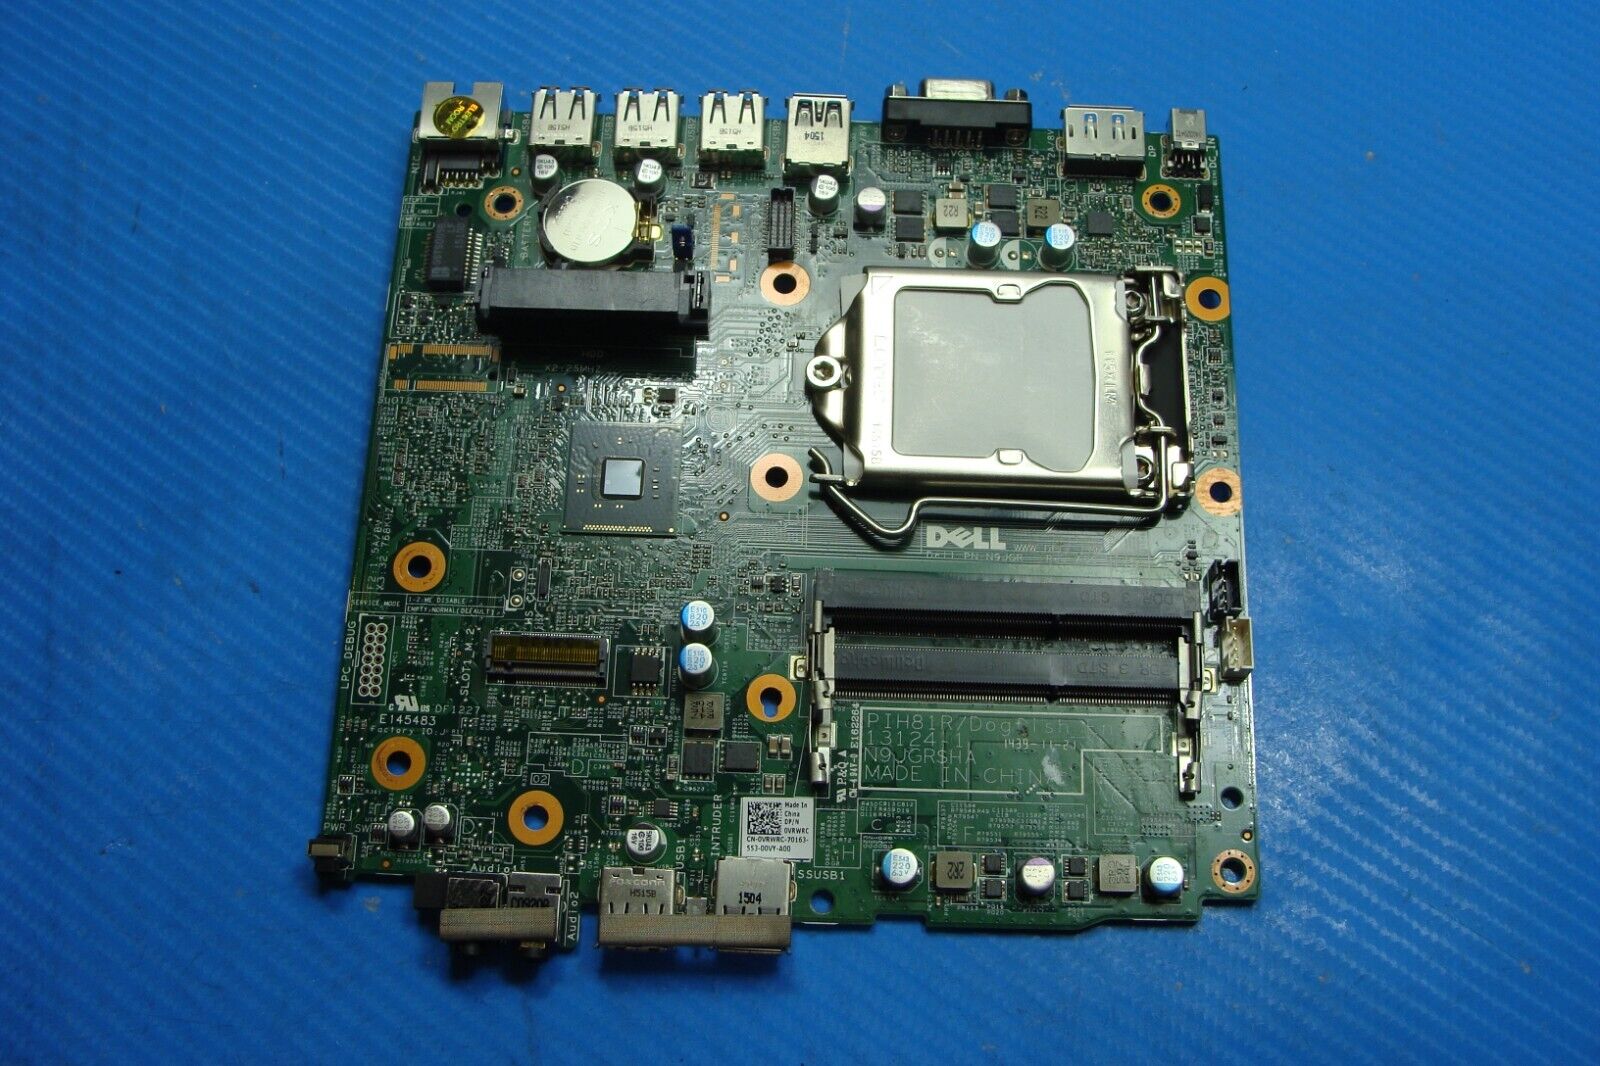 Dell Optiplex 3020m Intel Motherboard vrwrc AS IS